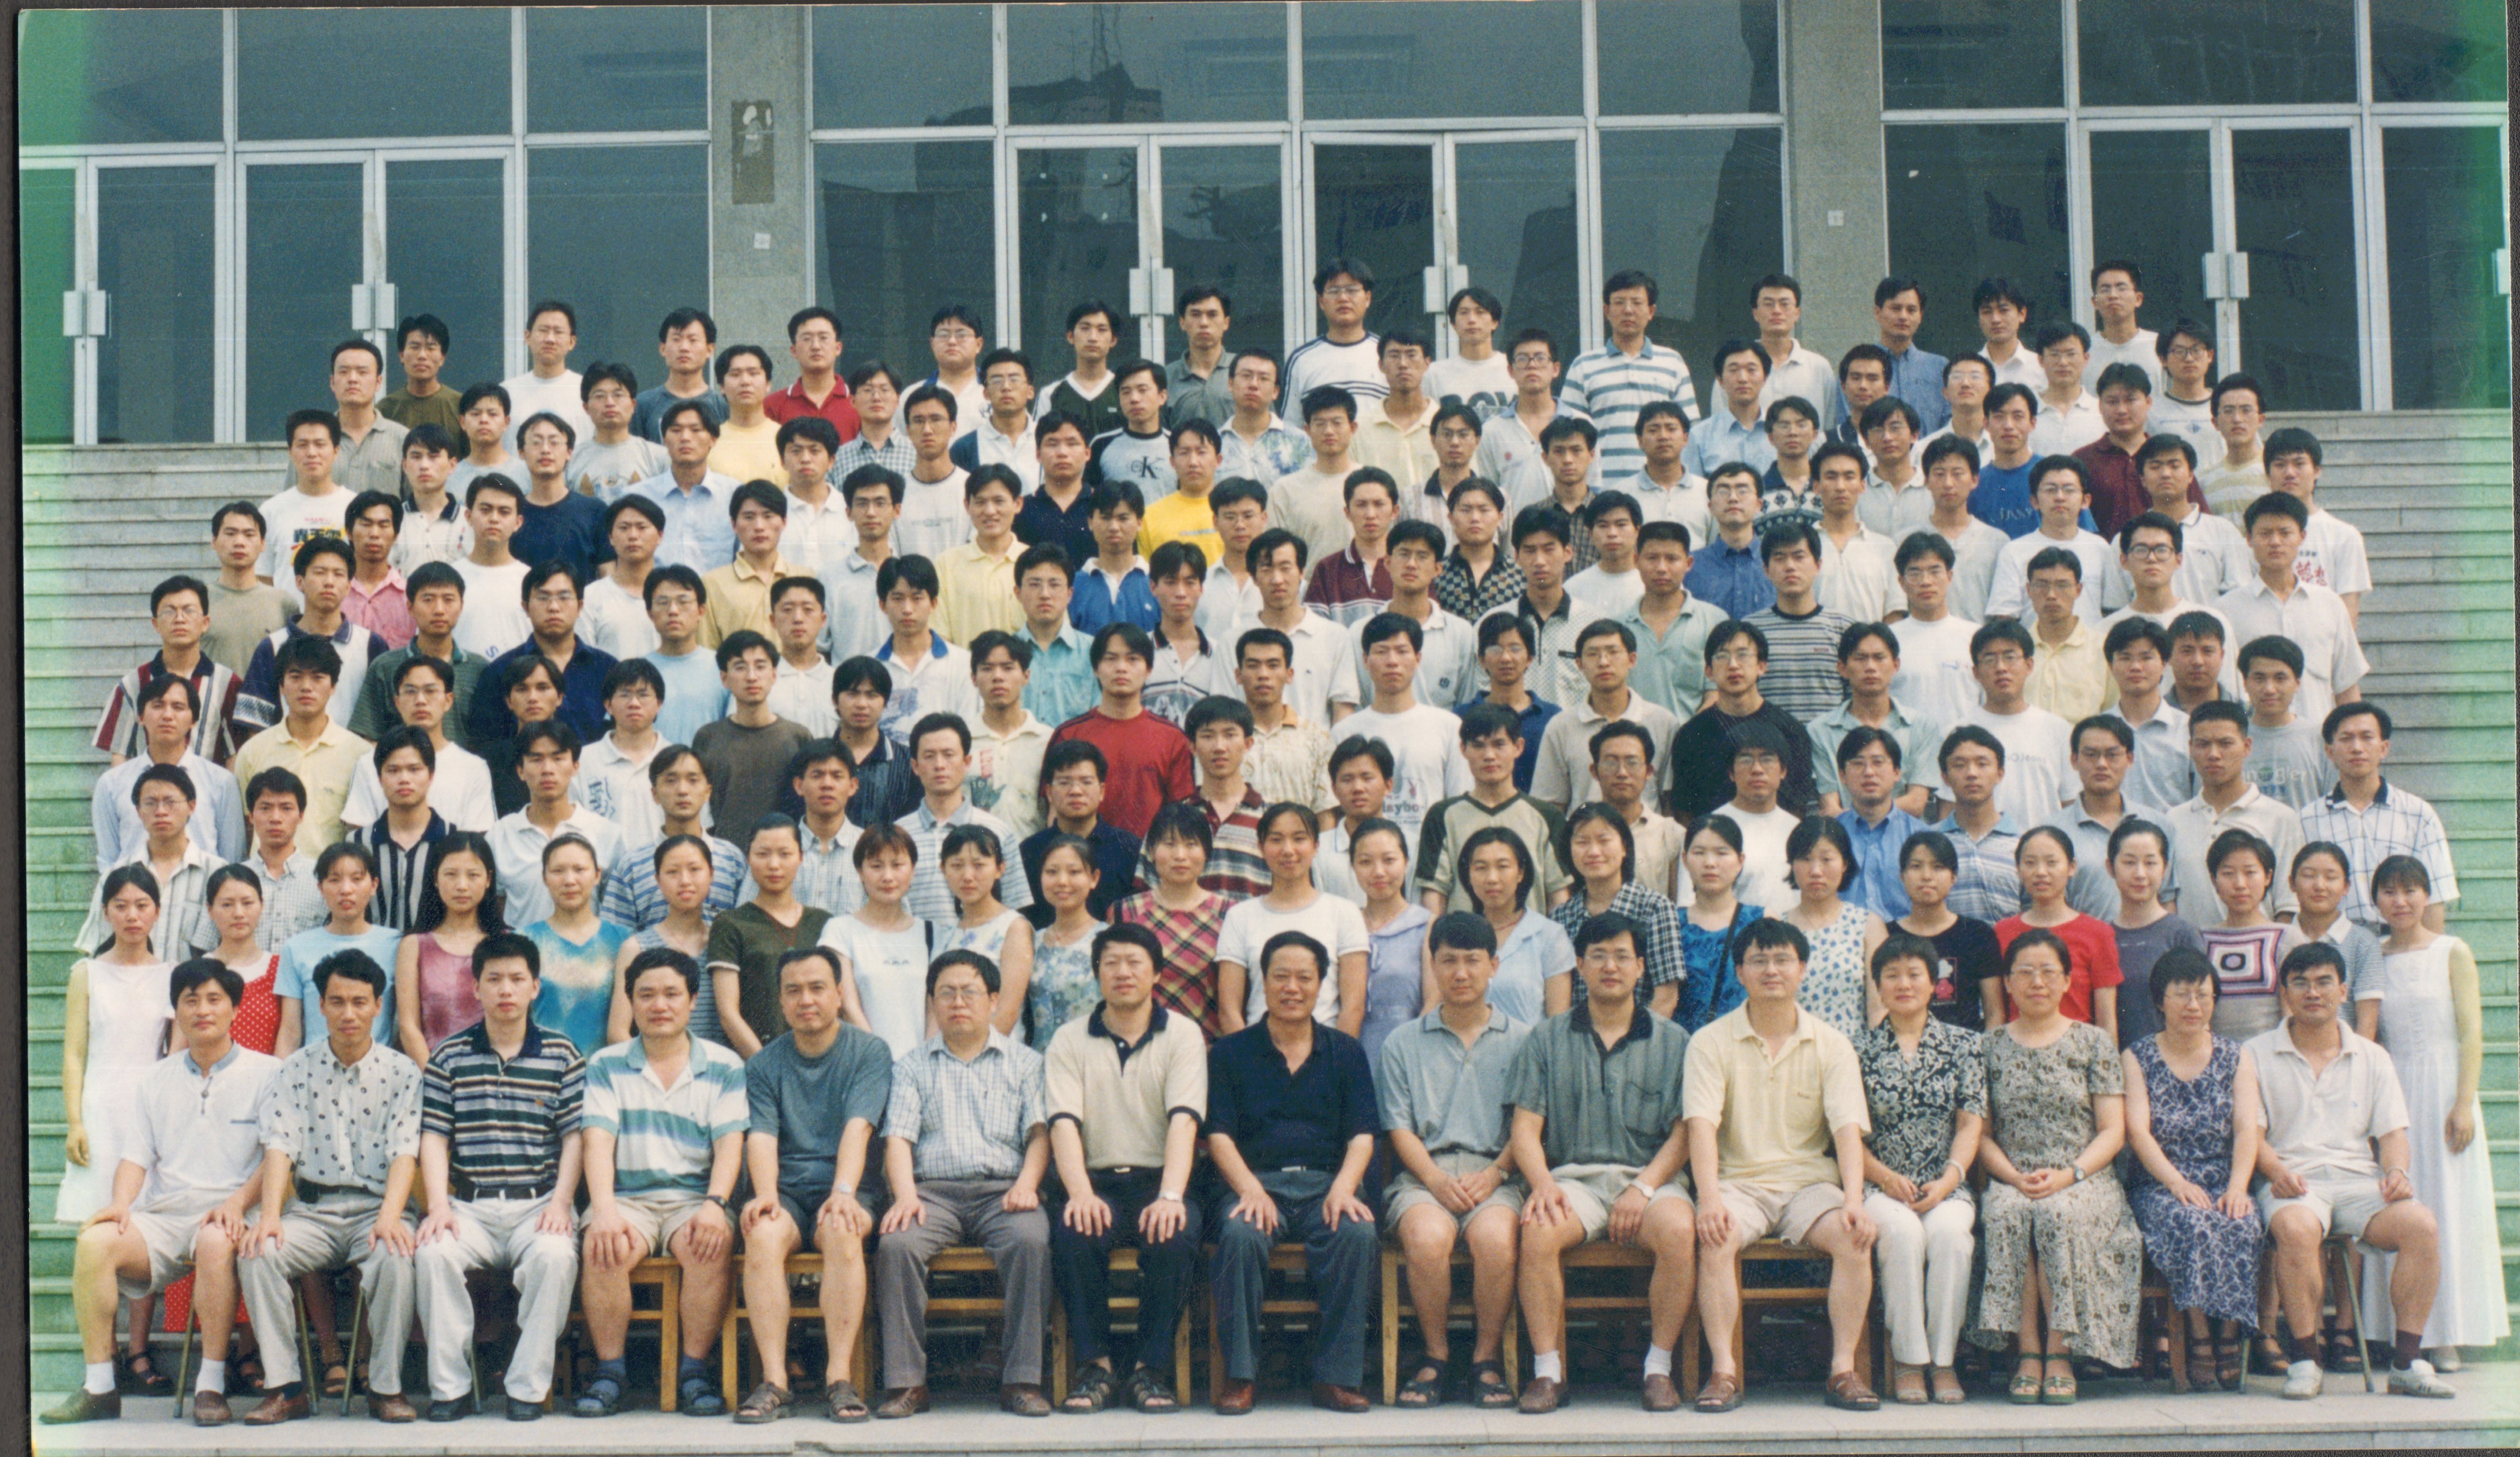 银河集团:198net有限公司机械工程学院2000届毕业生合影-1.jpg